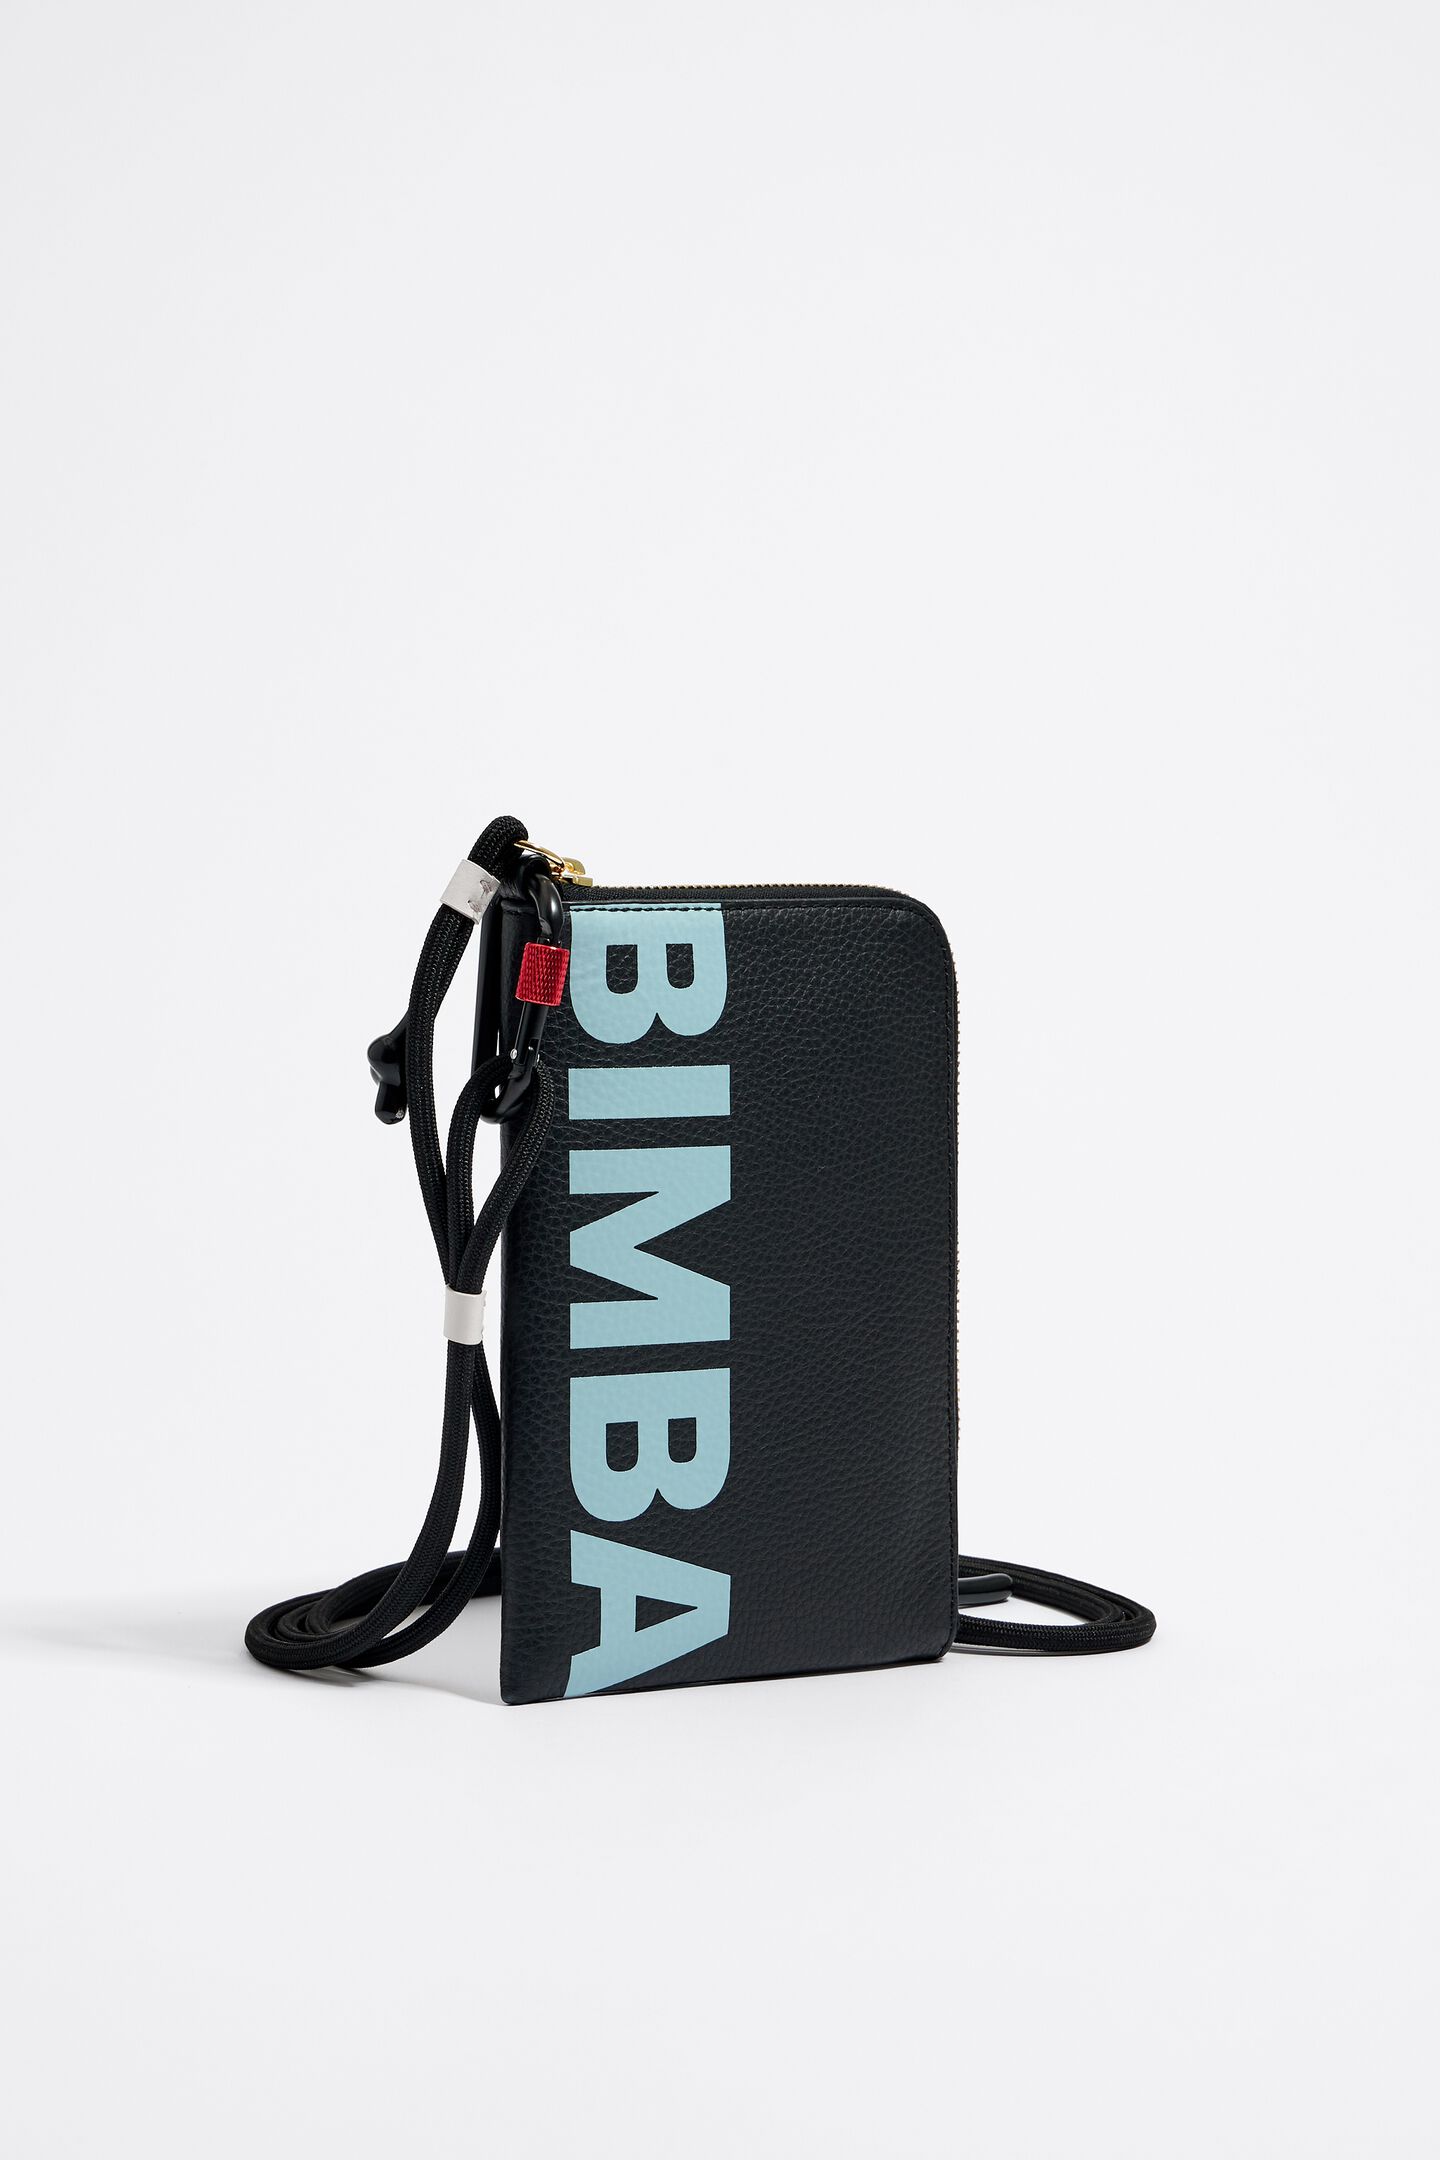 Bimba Y Lola Logo-lettering Graphic-print Makeup Bag in Black